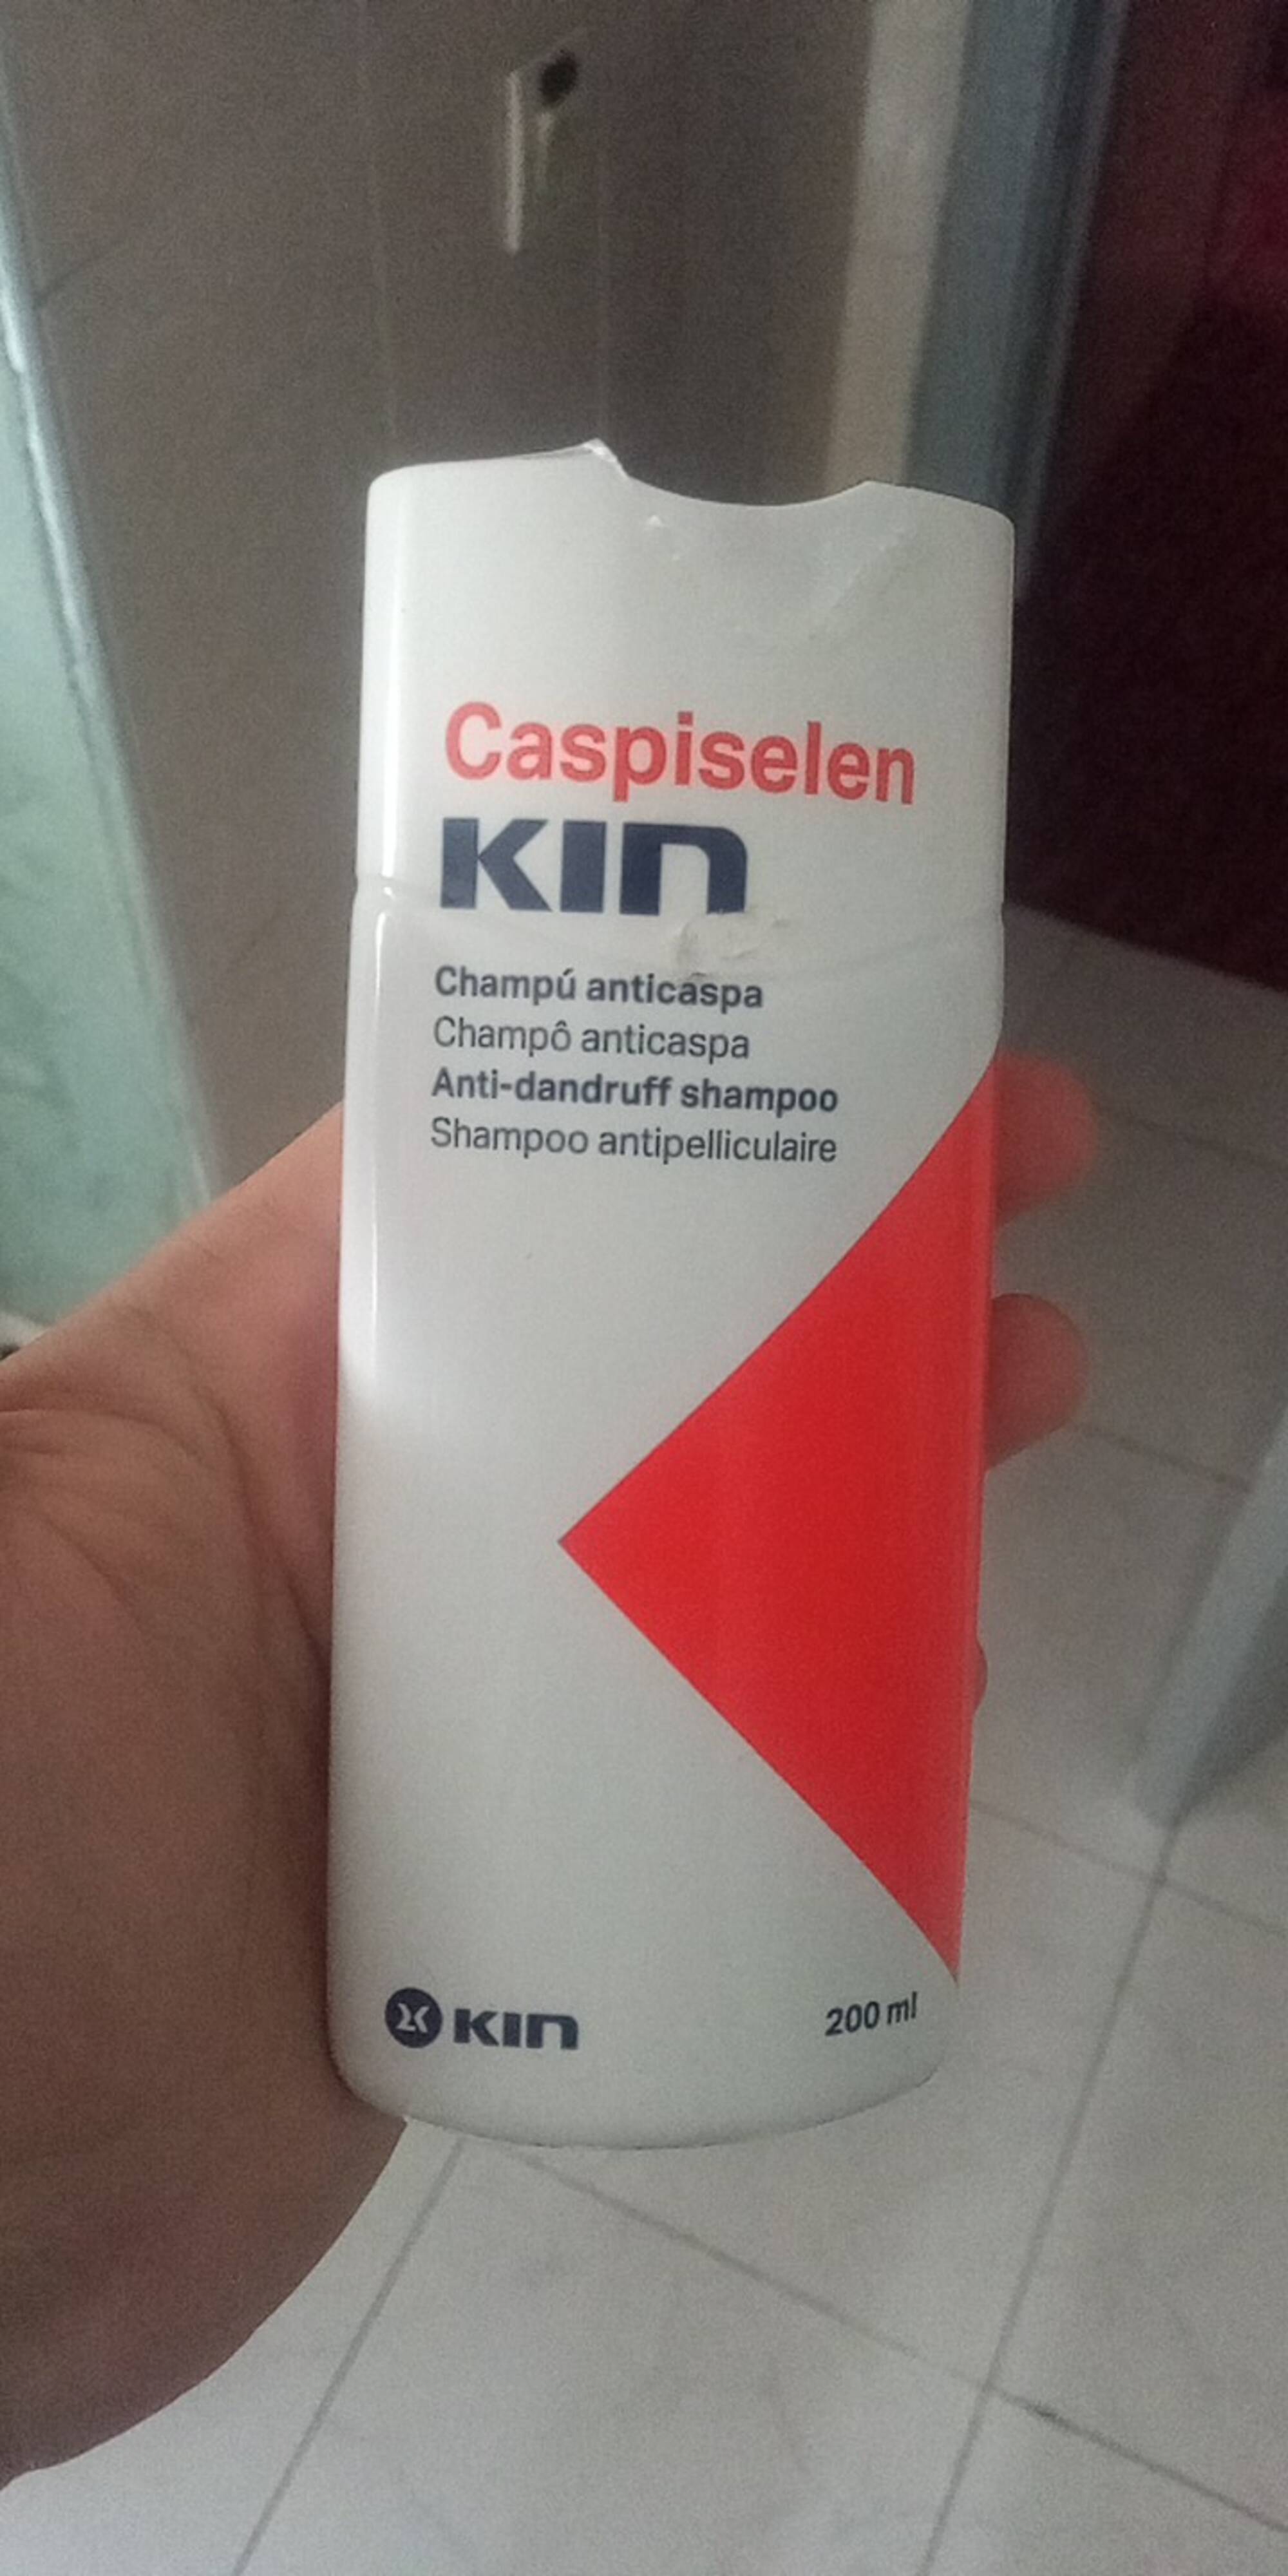 KIN - Caspiselen - Shampoo antipelliculaire